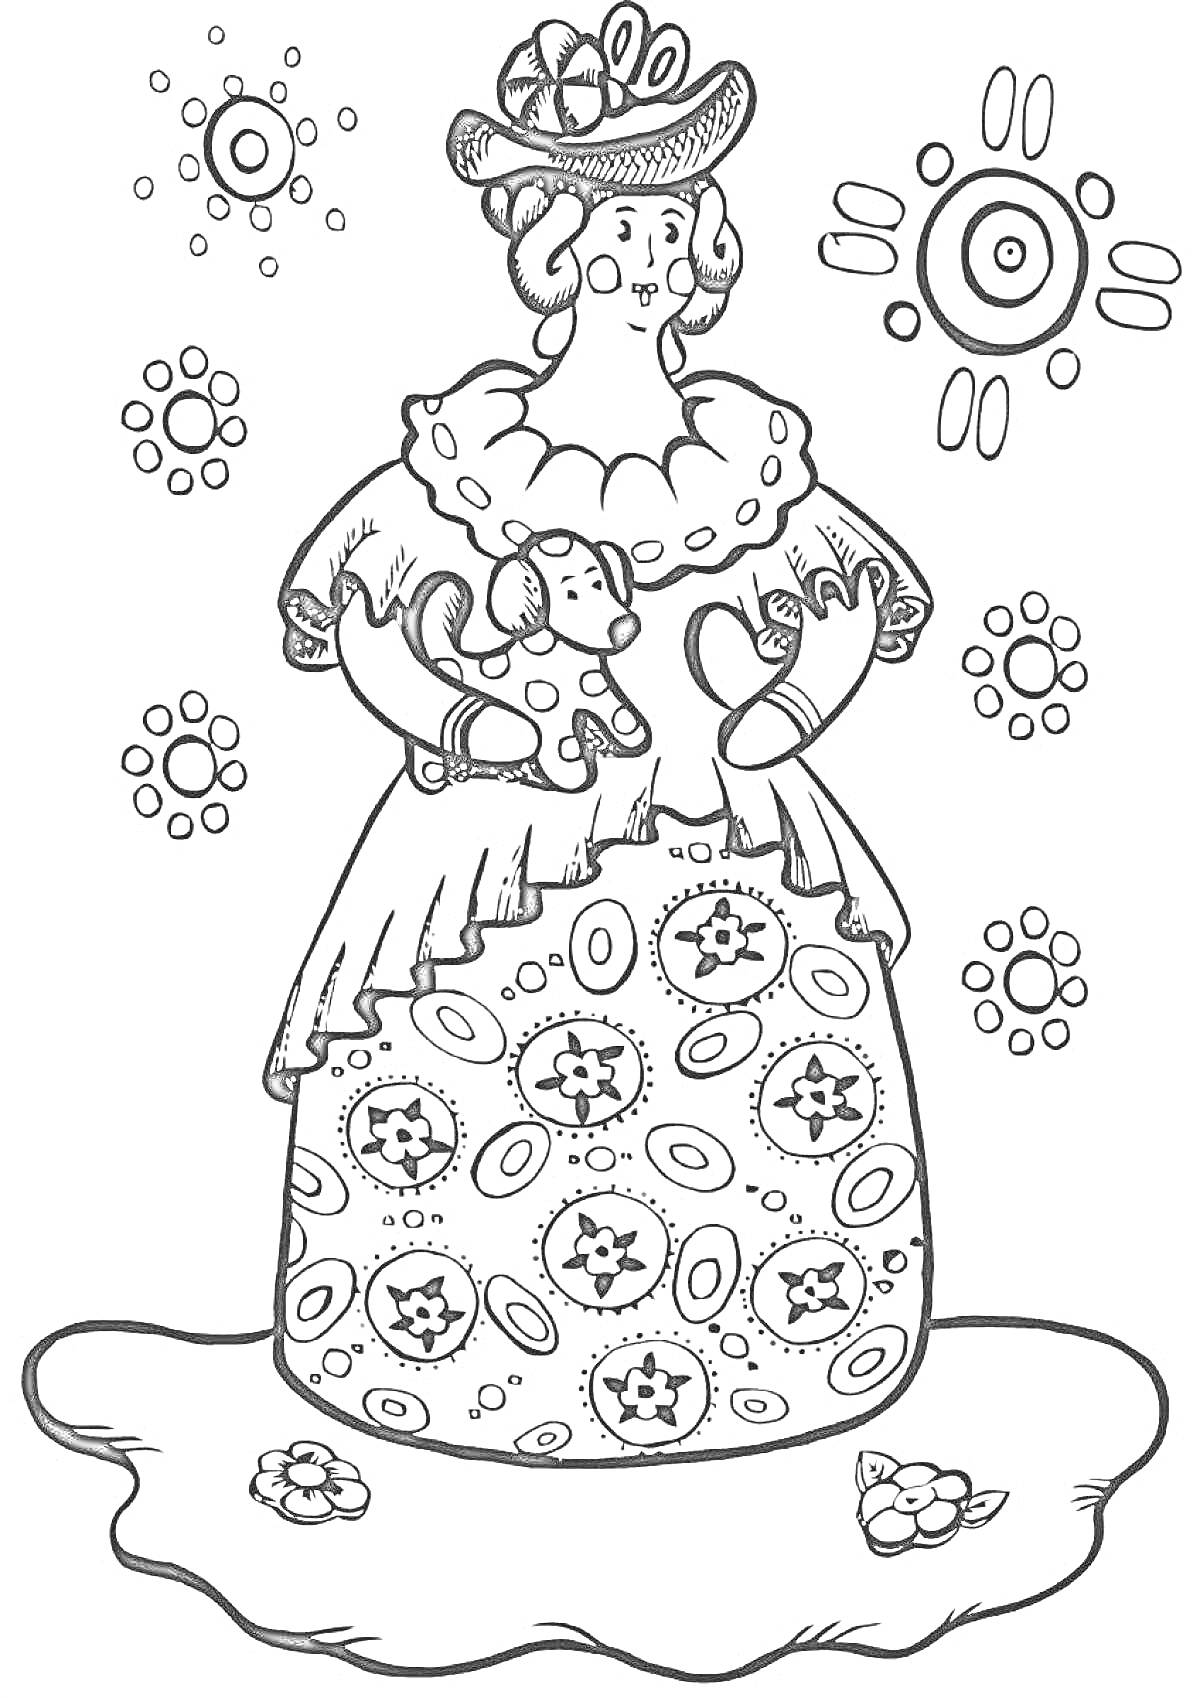  Дымковская барышня с собачкой на покрывале с узорами и цветами, вокруг кружочки с узорами